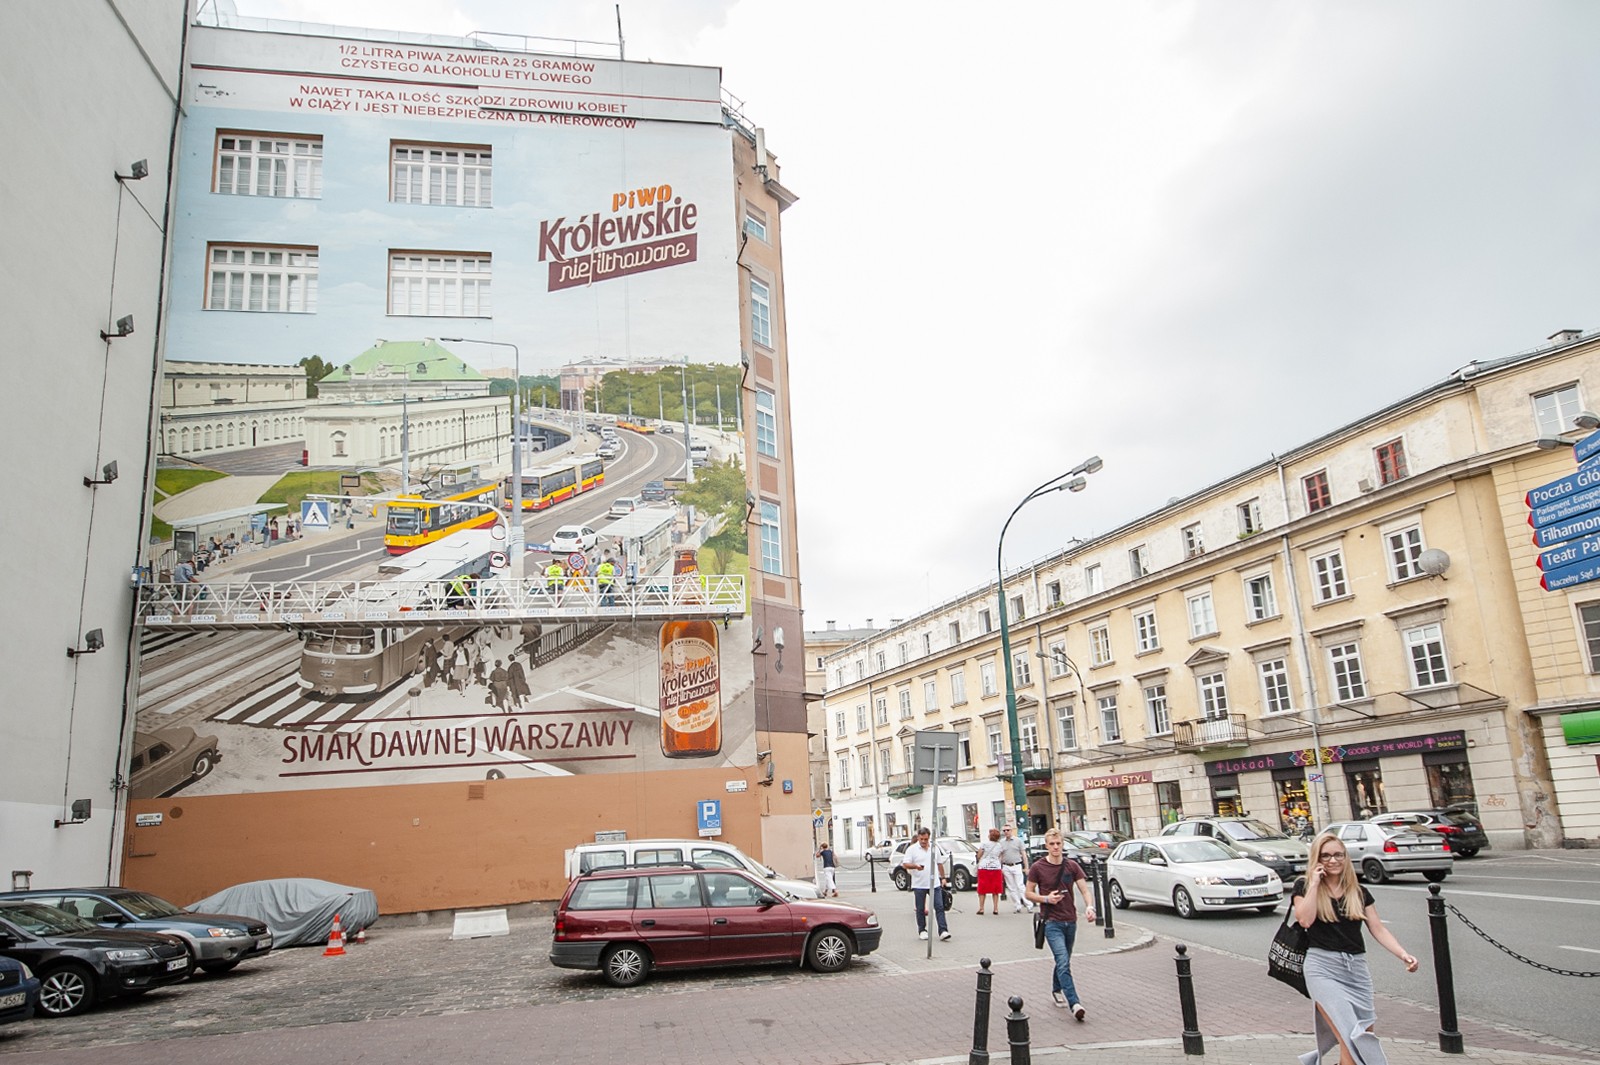 Dom Towarowy Bracia Jabłkowscy widziany z ulicy Kruczej z muralem przedstawiającym reklamę piwa Królewskie niefiltrowane | Krolewskie niefiltrowane | Portfolio